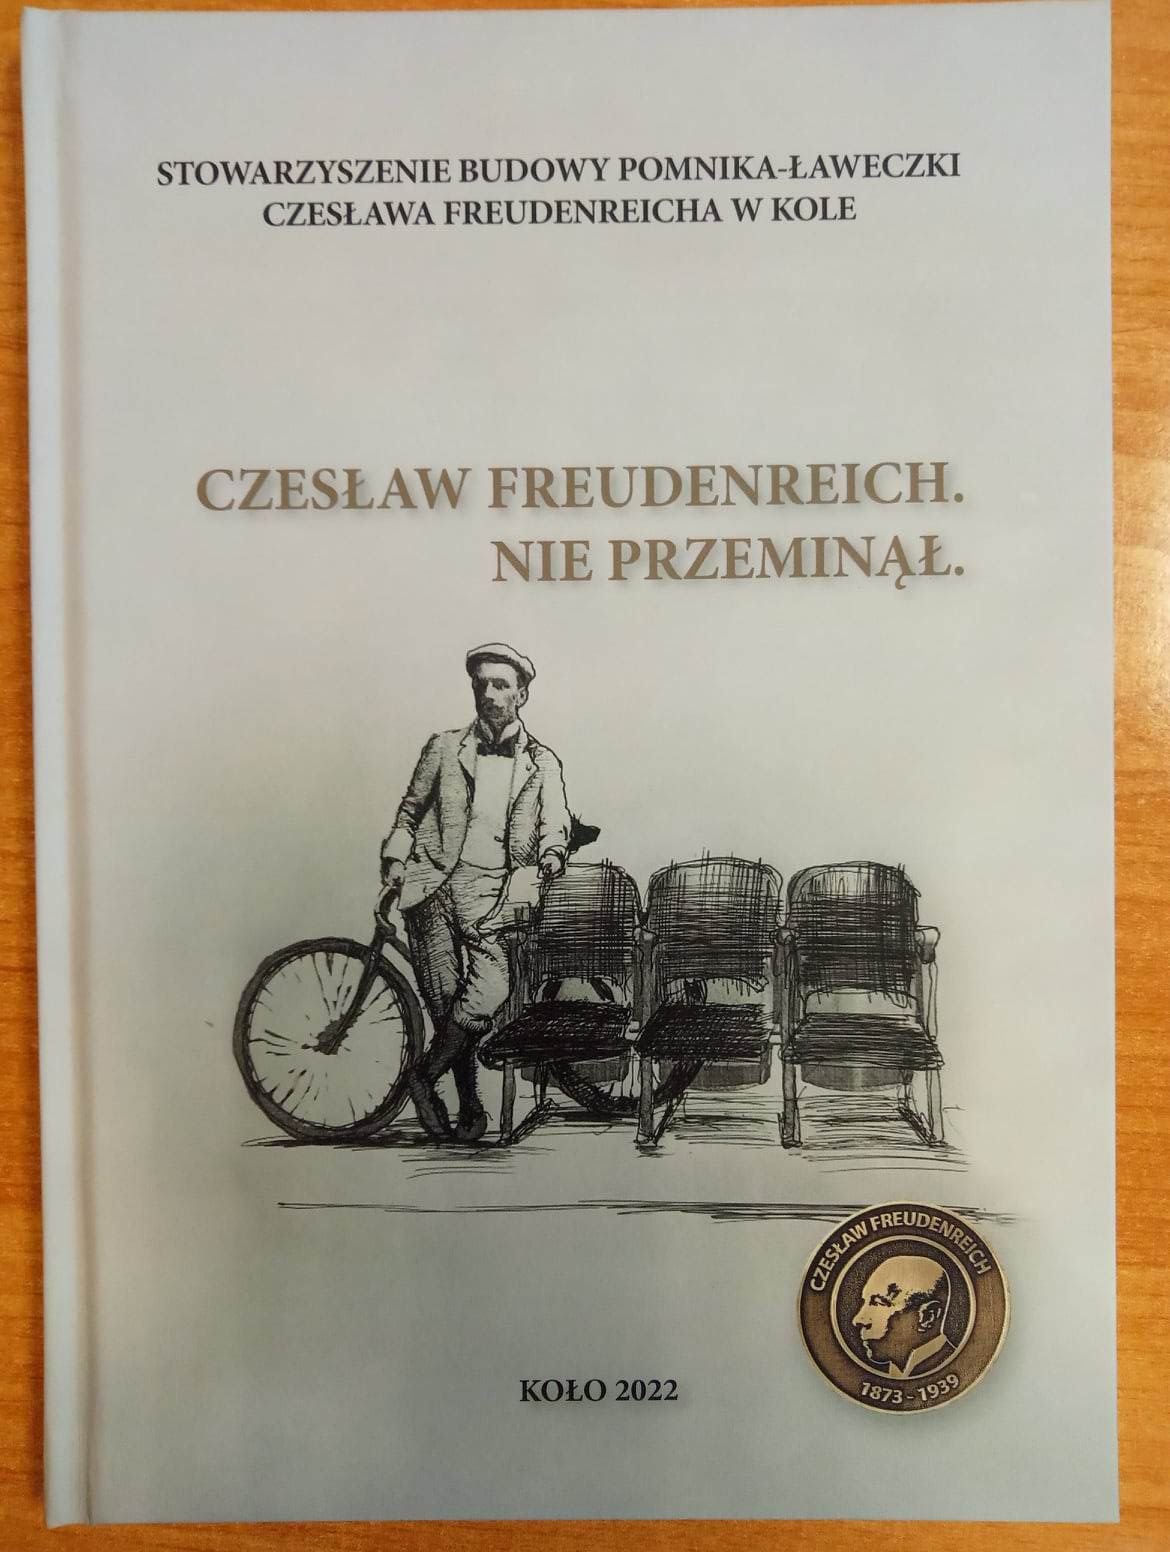 Okładka wydawnictwa „Czesław Freudenreich. Nie przeminął”